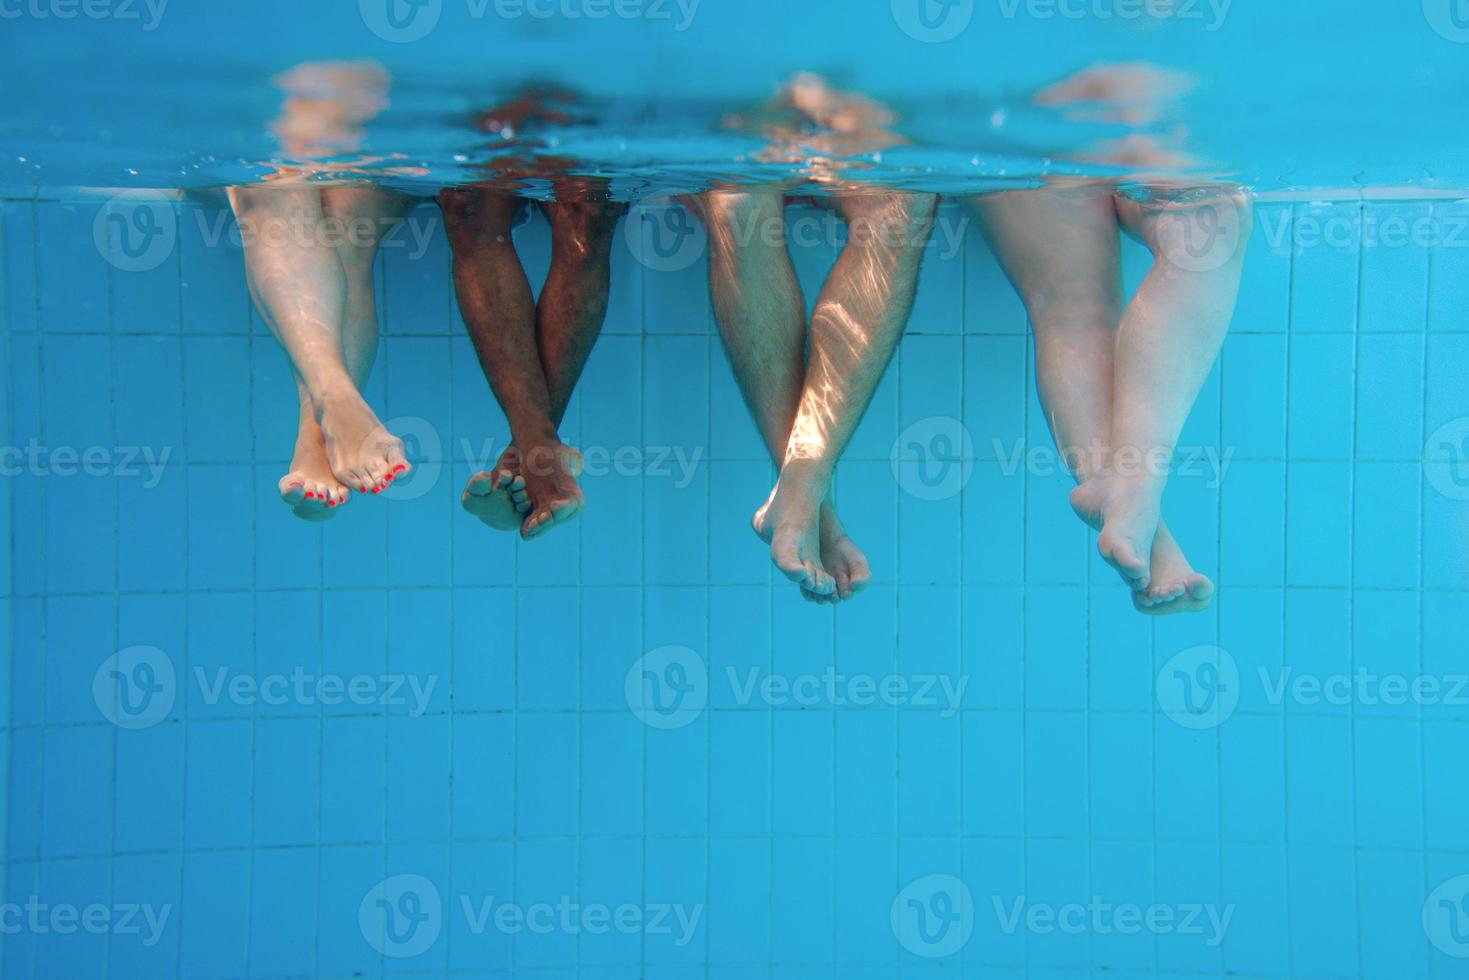 pernas de homem afro-americano com amigos caucasianos na piscina debaixo d'água. verão. conceito de férias, internacional e esporte. foto